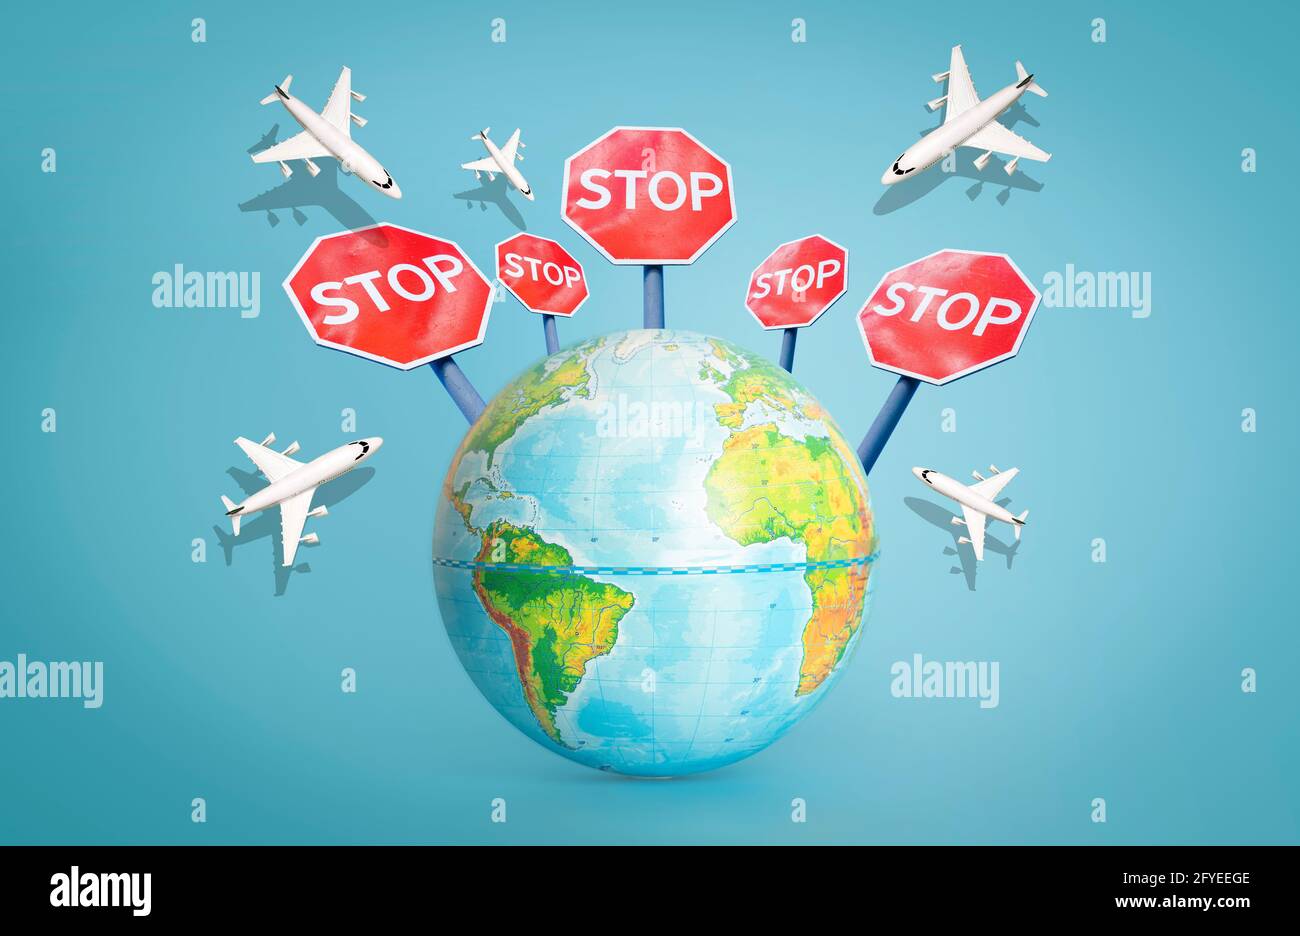 Flugverbot und geschlossene Grenzen für Touristen und Reisende. Konzept der Flugverbotszone. Flugzeug im Flug mit Stoppschild. Hochwertige Fotos Stockfoto